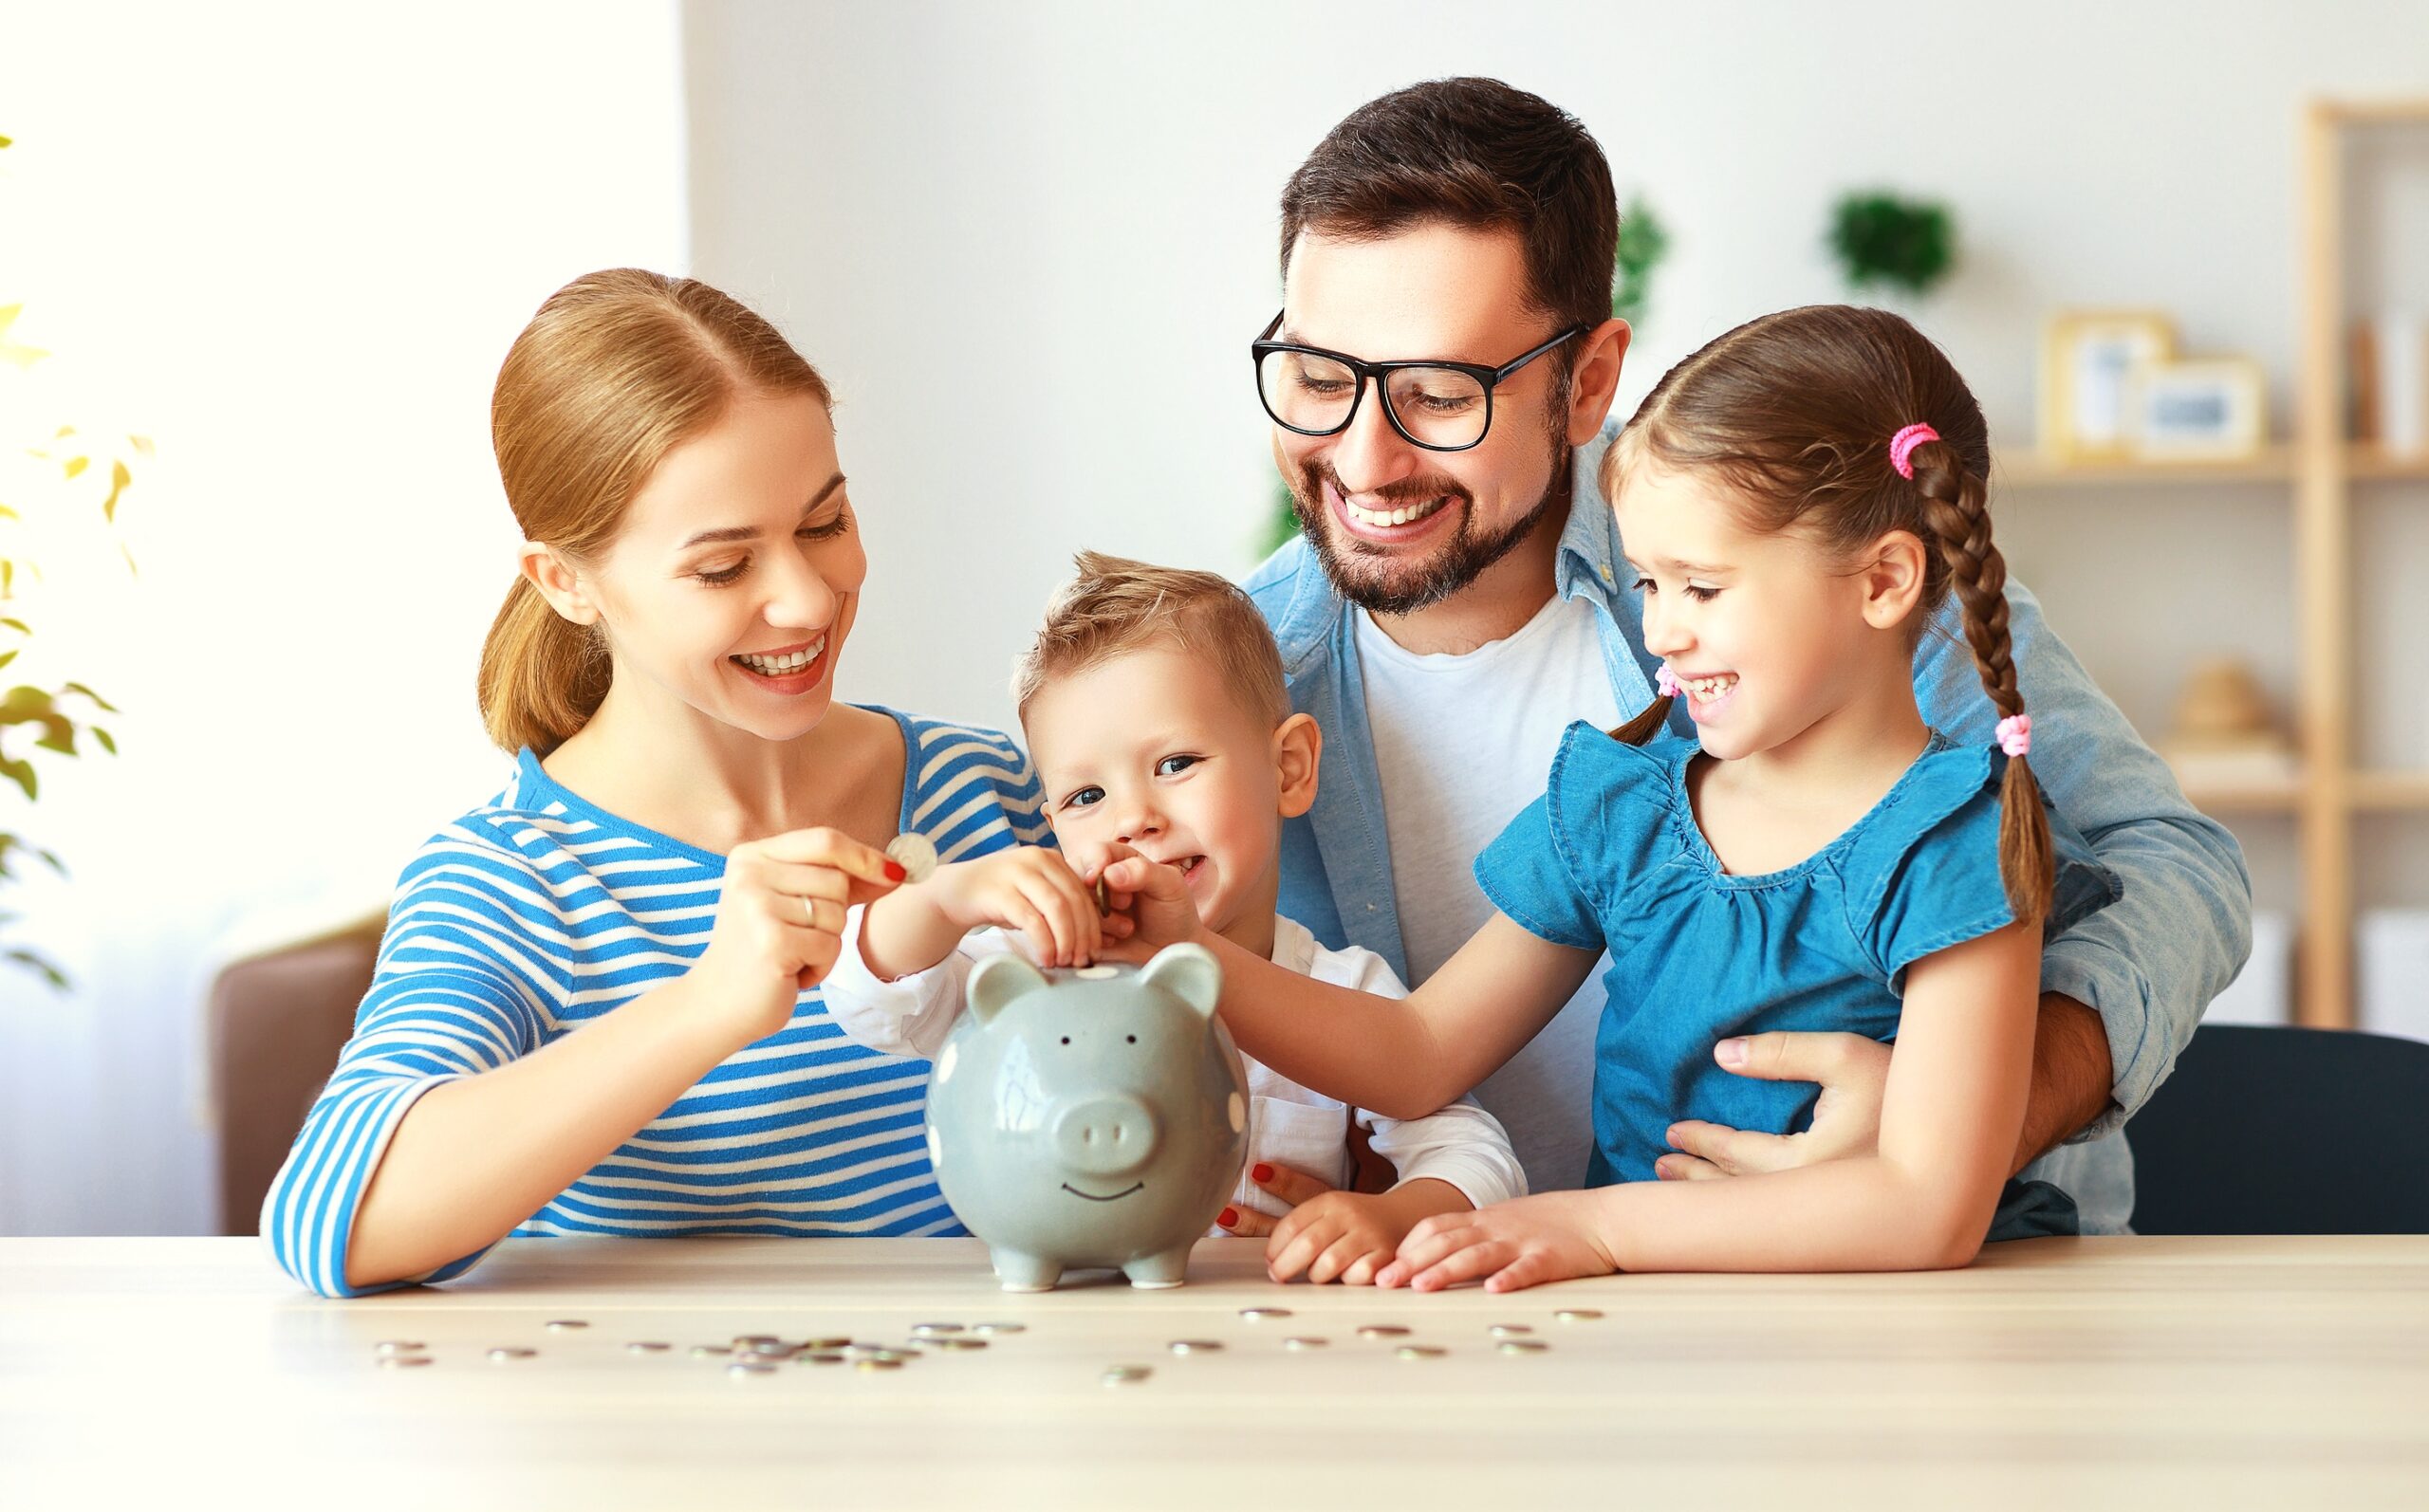 Familias: ¿Qué hacer para superar la cuesta de enero?